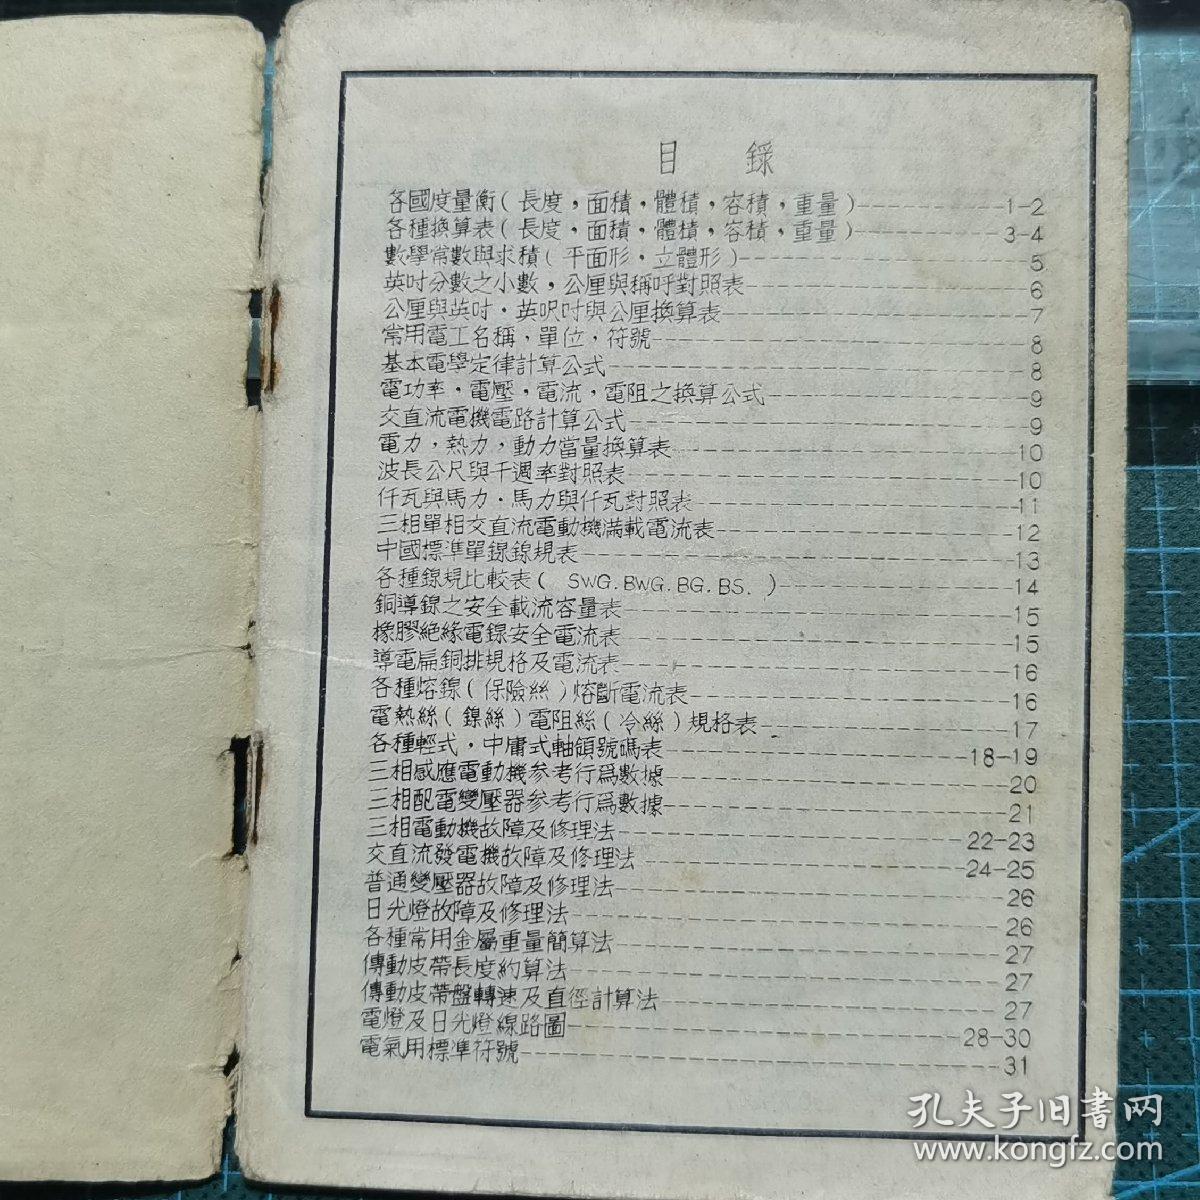 5五十年代《实用电工手册》精简袖珍本，上海长城图书出版社印行